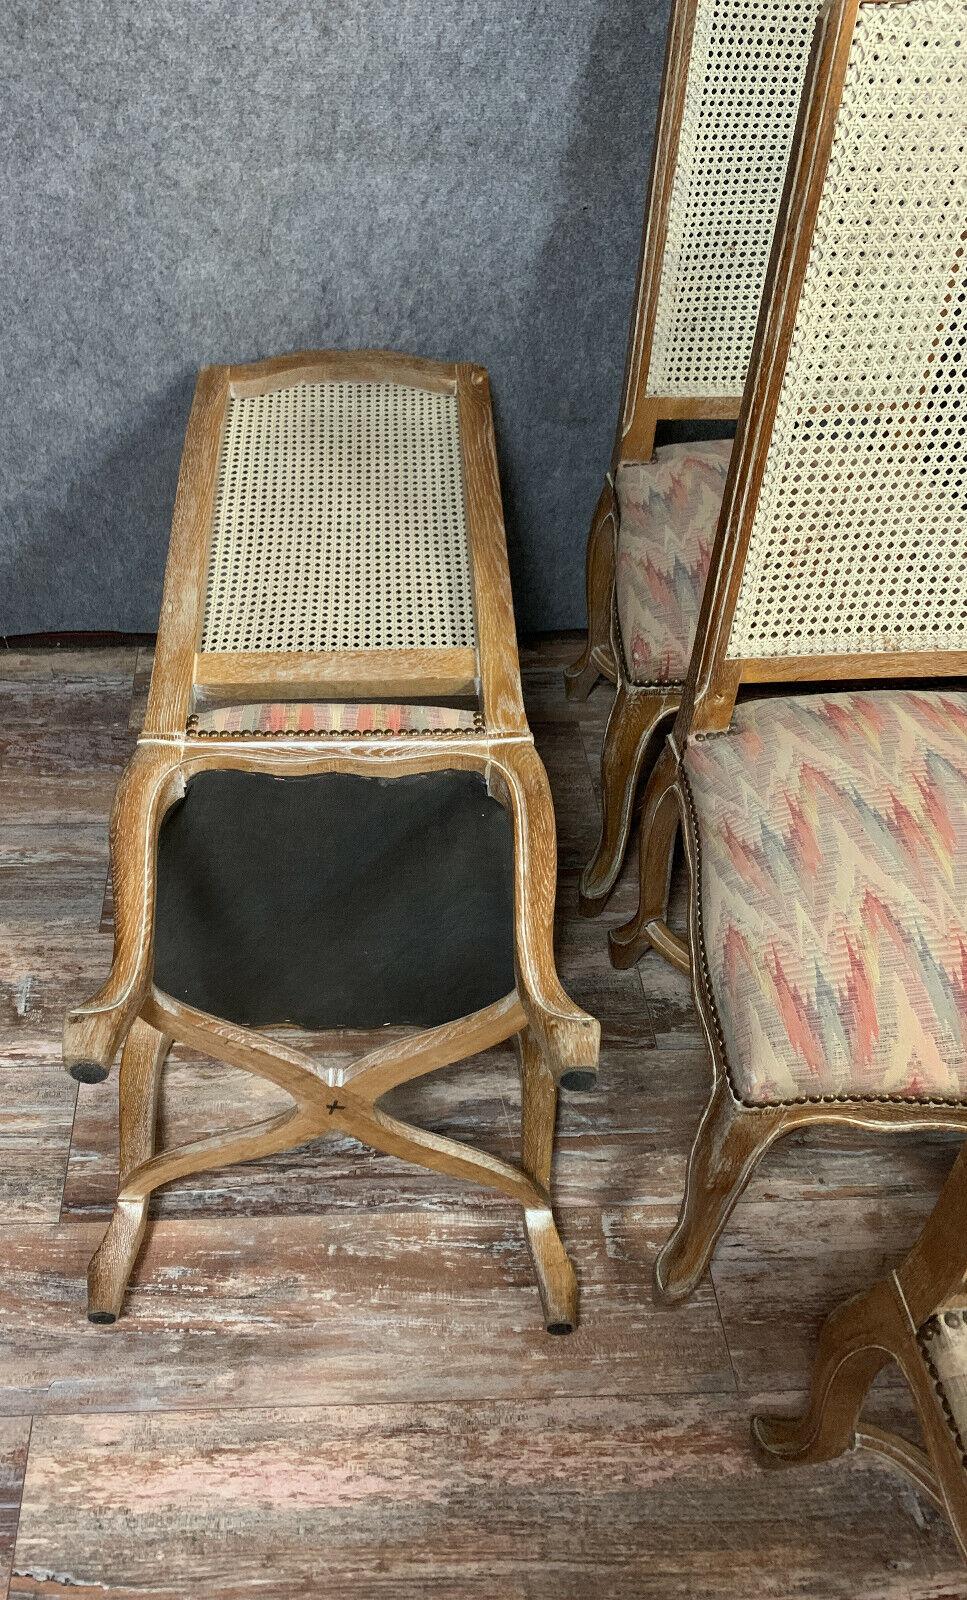 Erhöhen Sie Ihr Esserlebnis mit diesem prächtigen Satz von sechs Louis XV-Stühlen mit hoher Rückenlehne, die aus keramisiertem Holz gefertigt sind und auf die Zeit um 1900 zurückgehen.

Jeder Stuhl verfügt über eine wunderschön gepolsterte